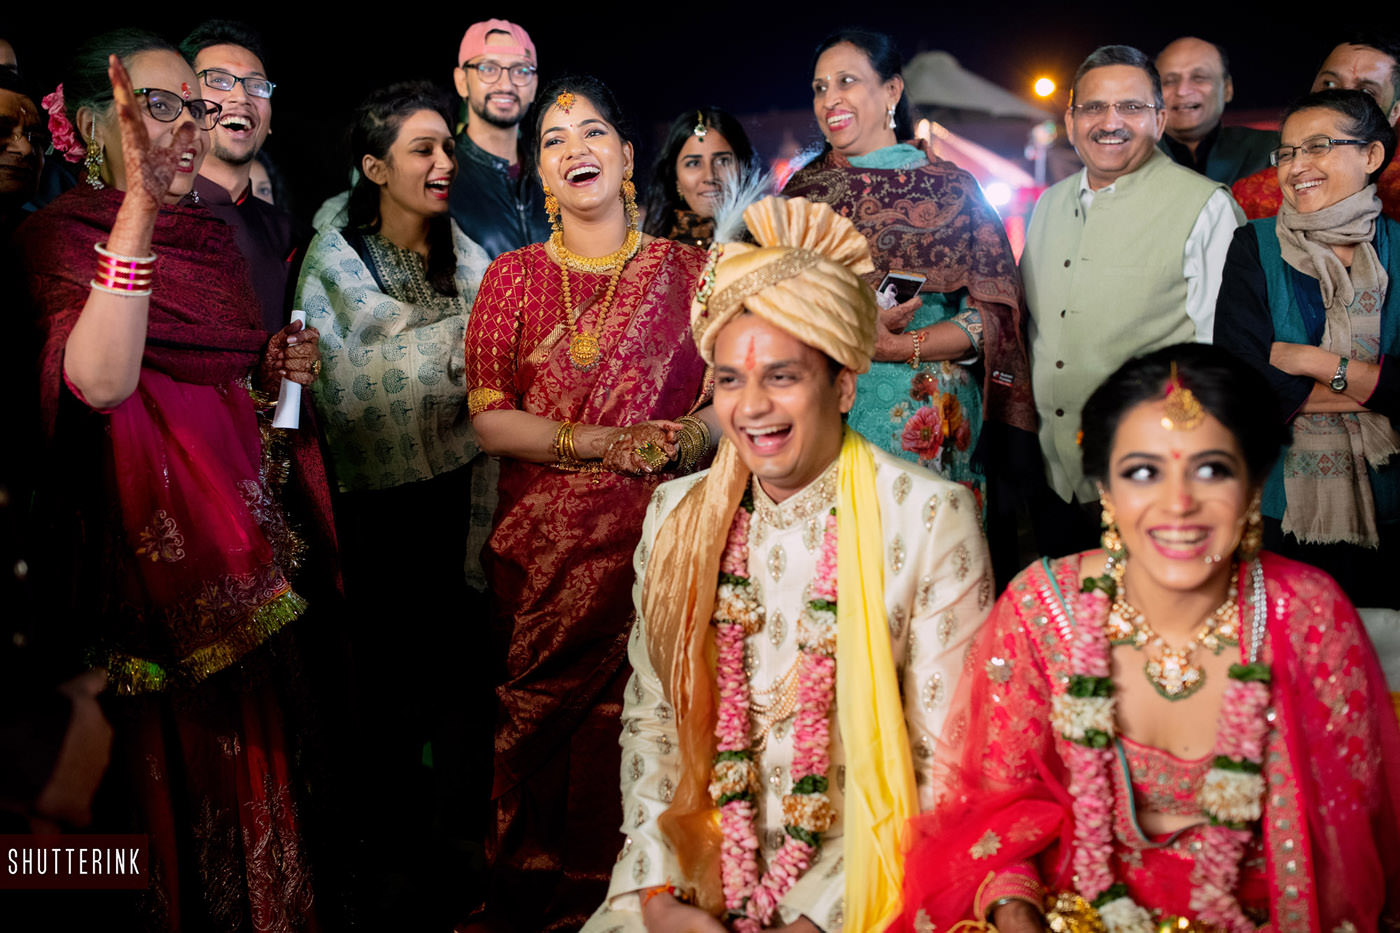 Best destination wedding photographer in india